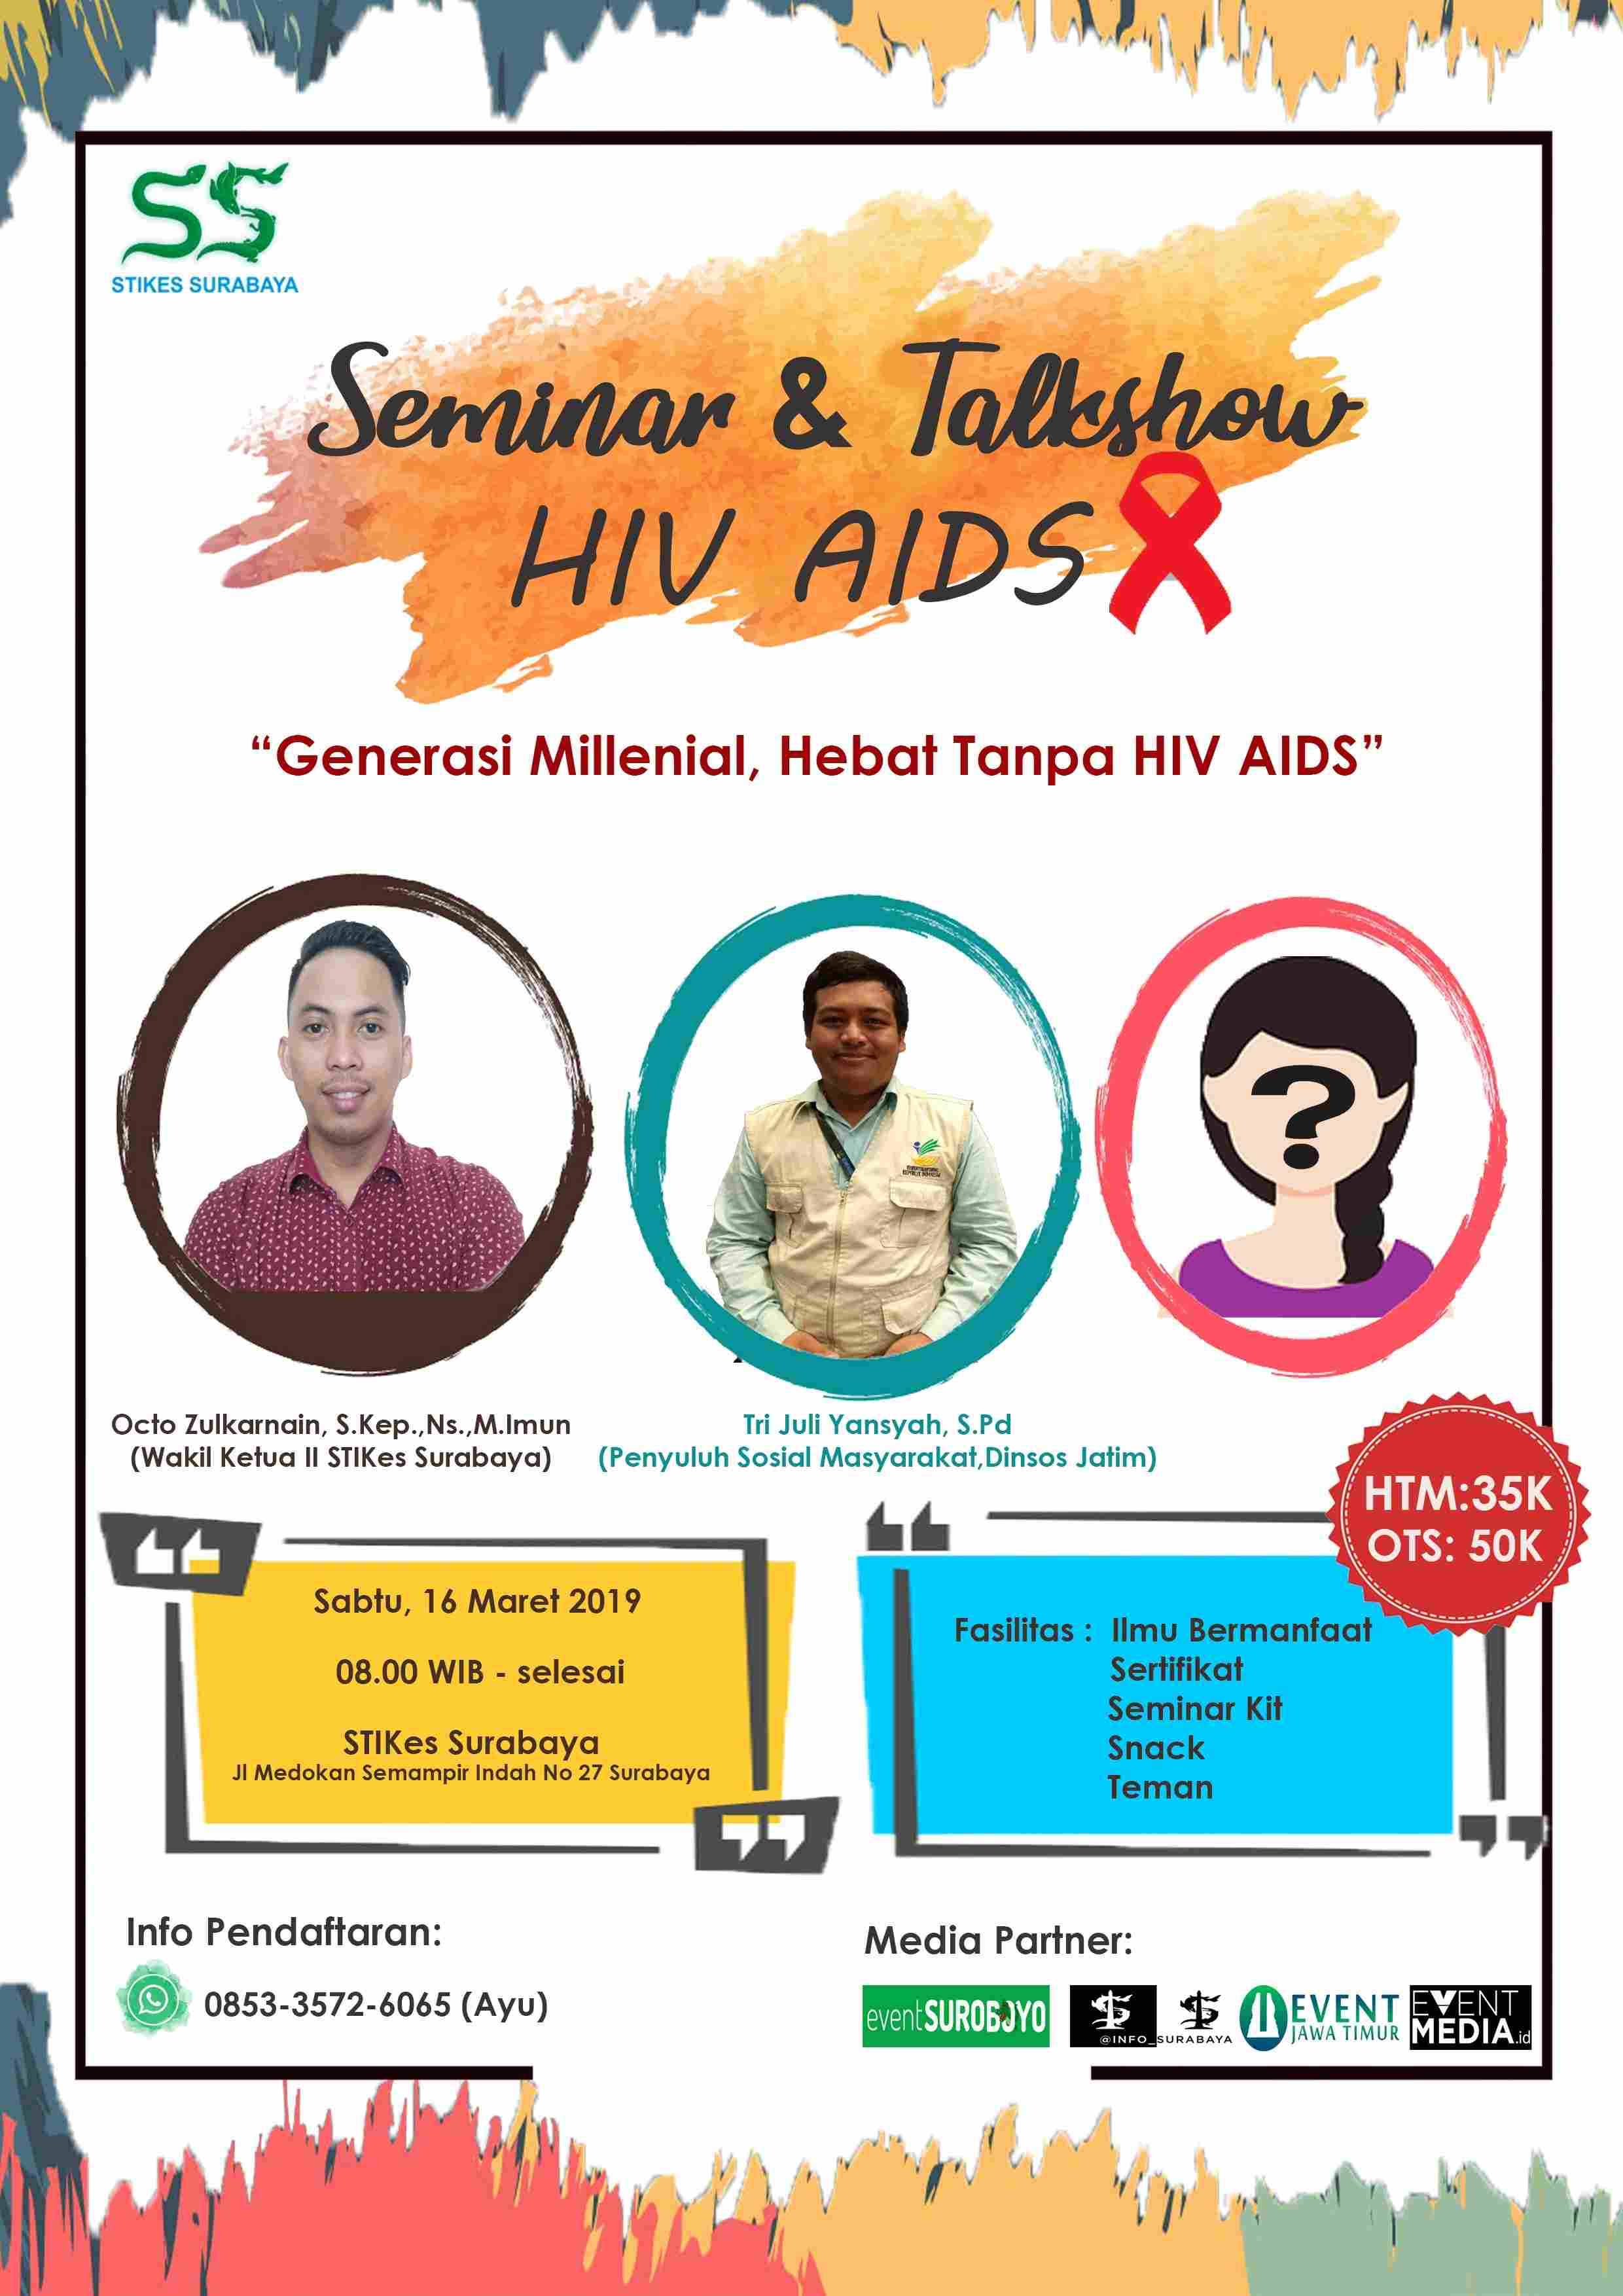 SEMINAR dan TALKSHOW HIV AIDS “Generasi Millenial, Hebat Tanpa HIV AIDS” image 1